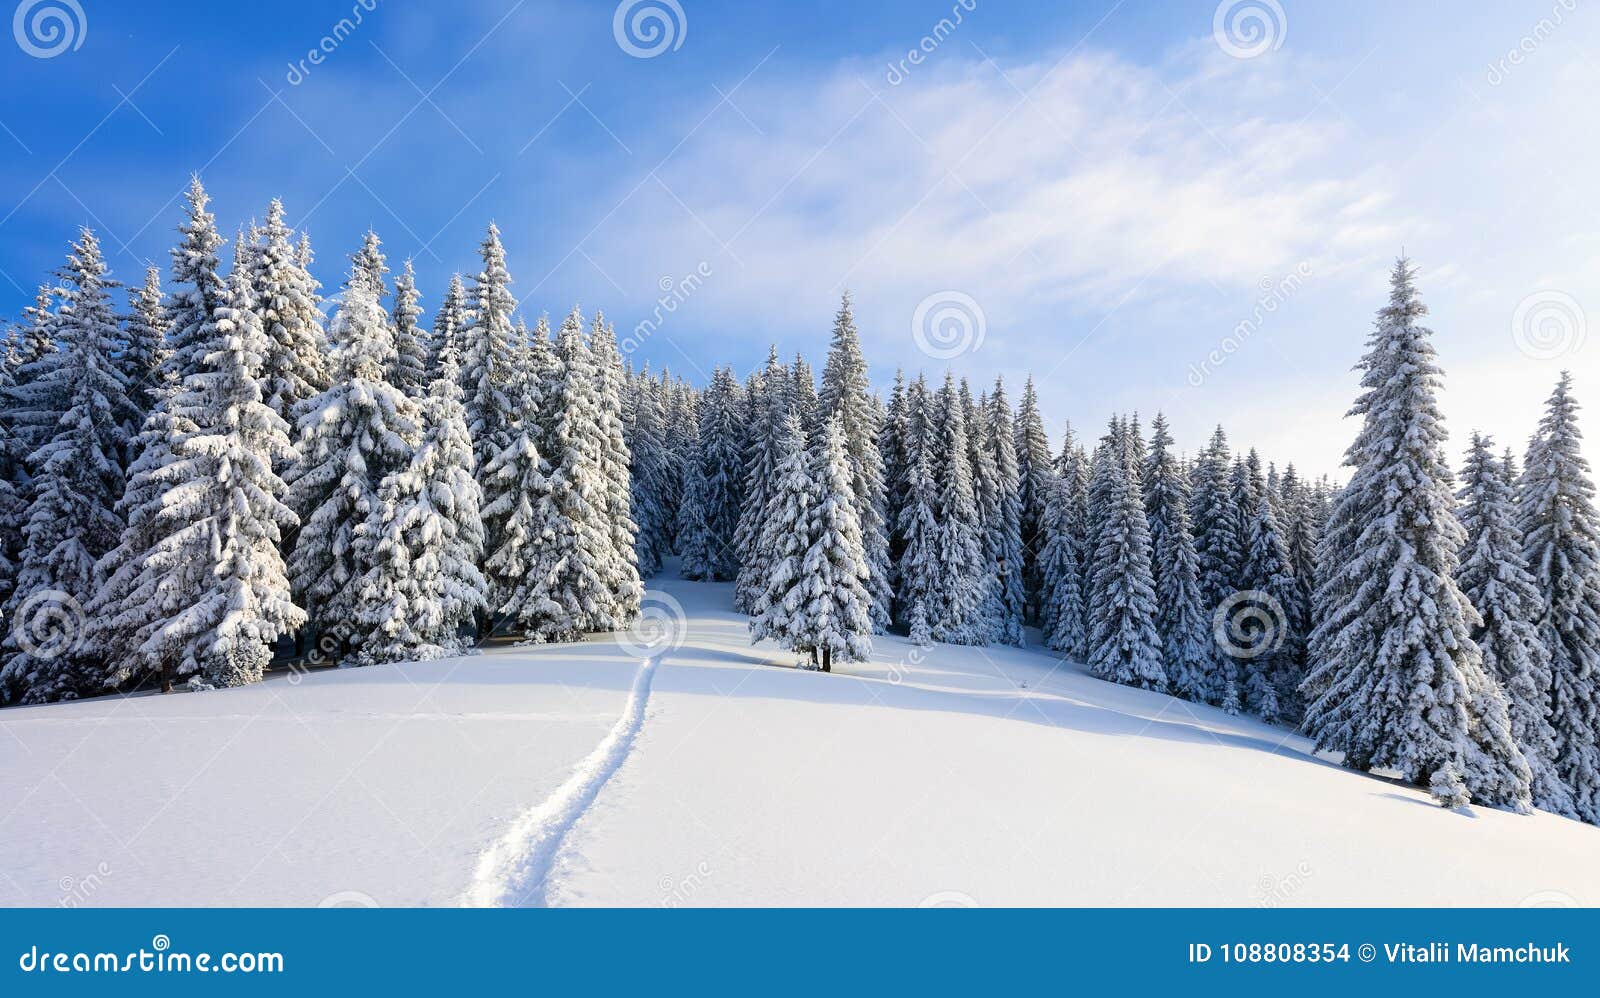 paysage-d-hiver-avec-les-arbres-justes-s